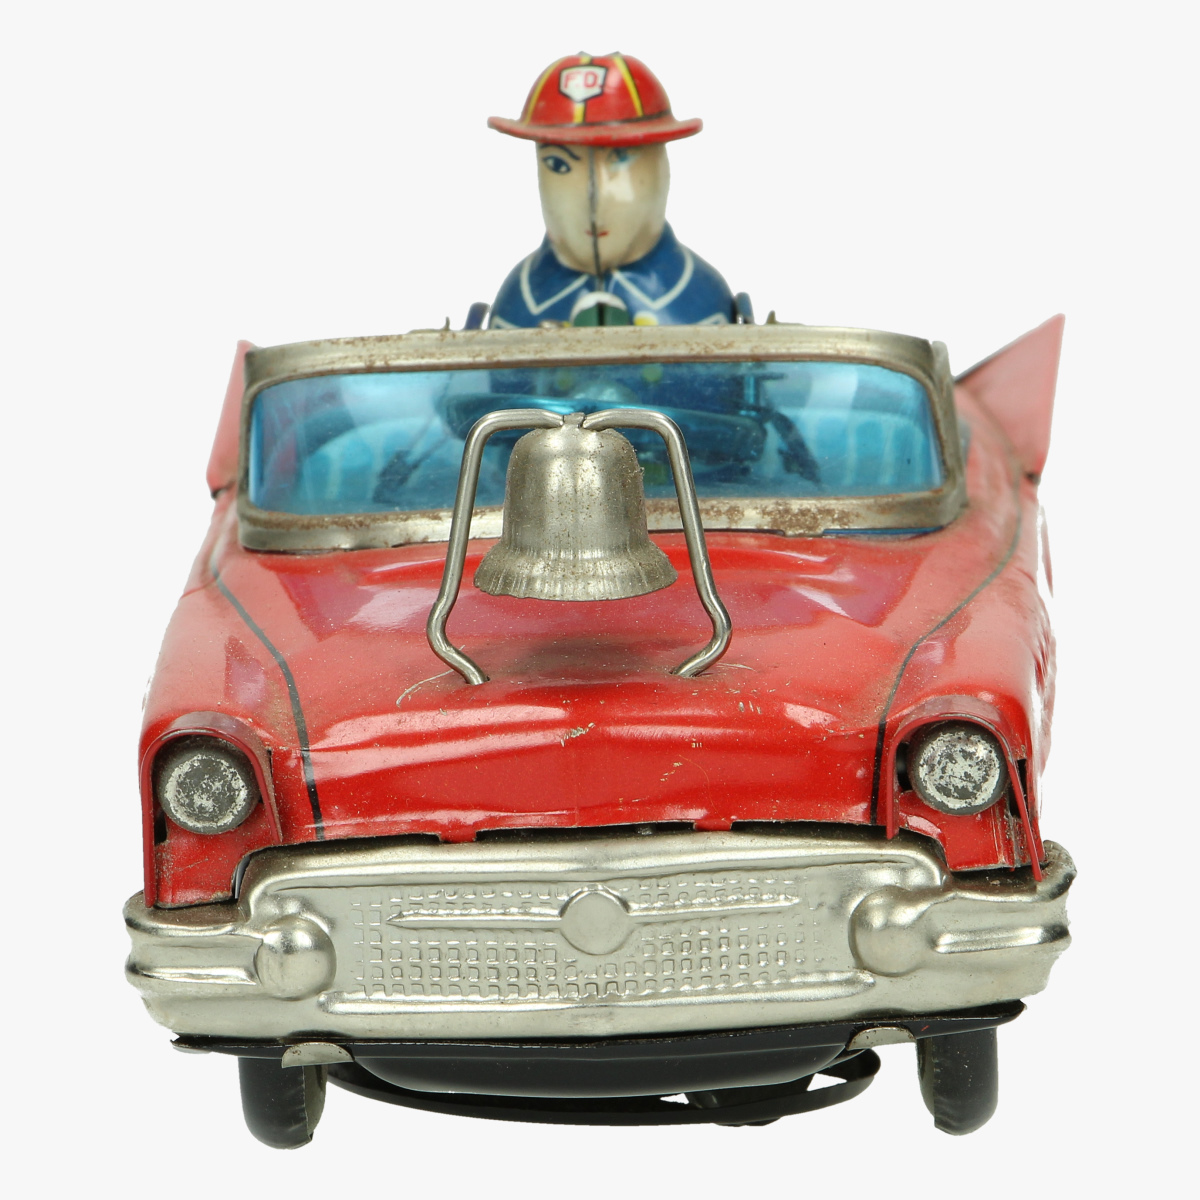 Afbeeldingen van brandweer wagen bump 'n go f.d.car made in japan